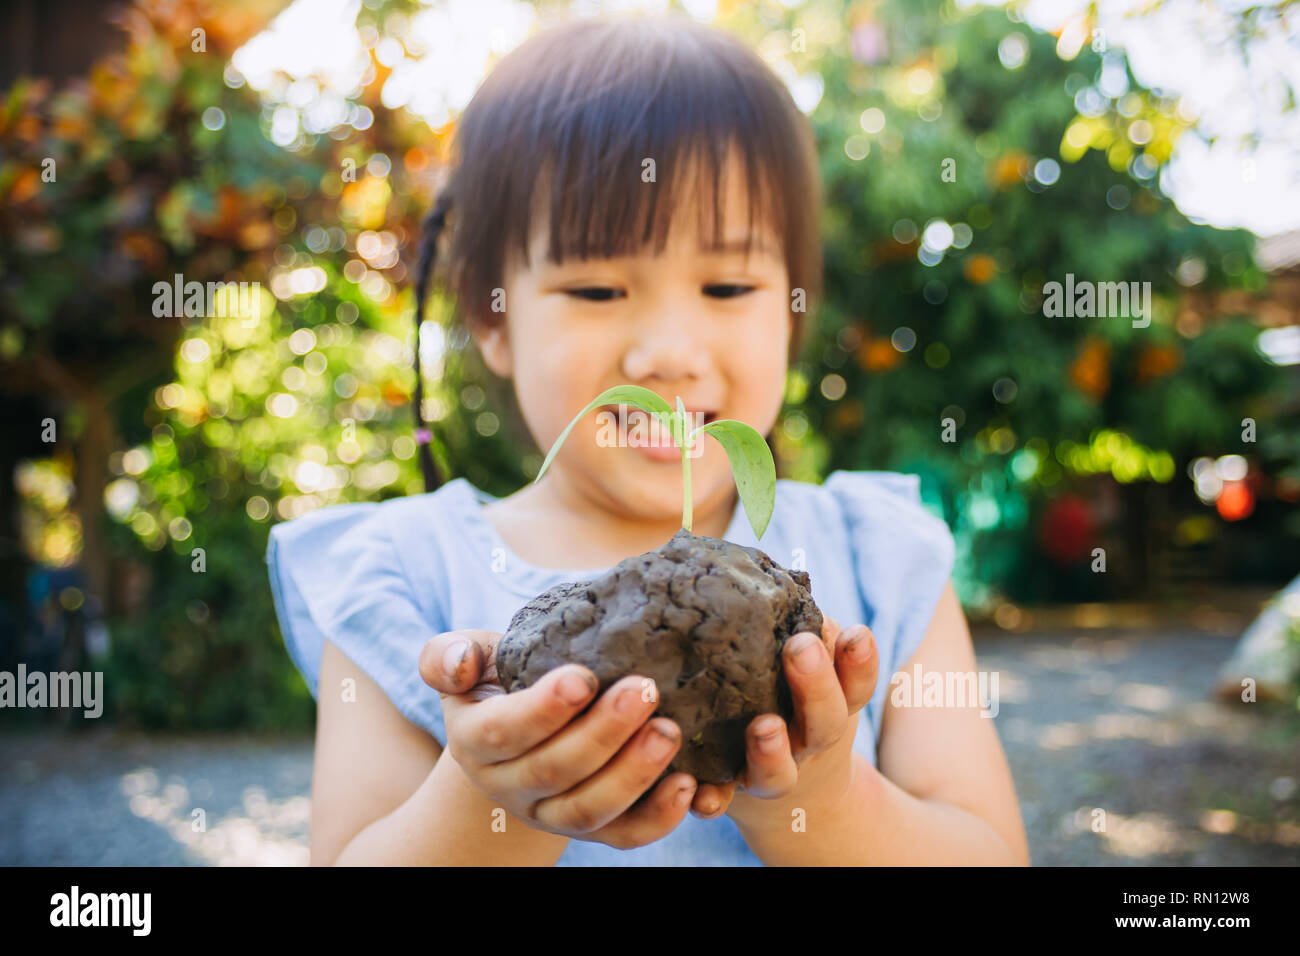 Kind Pflanzen einen Baum, um die globale Erwärmung oder den Klimawandel zu verhindern und die Erde zu retten. Konzept des Muttertags der Erde Stockfoto